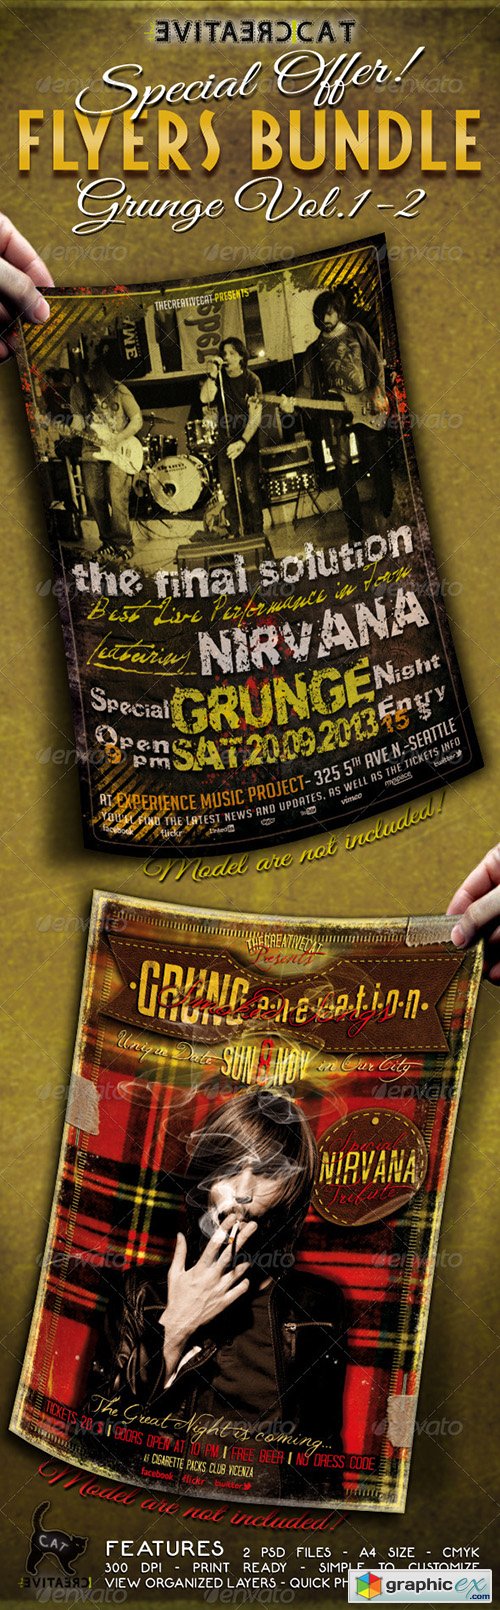 Grunge Flyer/Poster Bundle Vol. 1-2